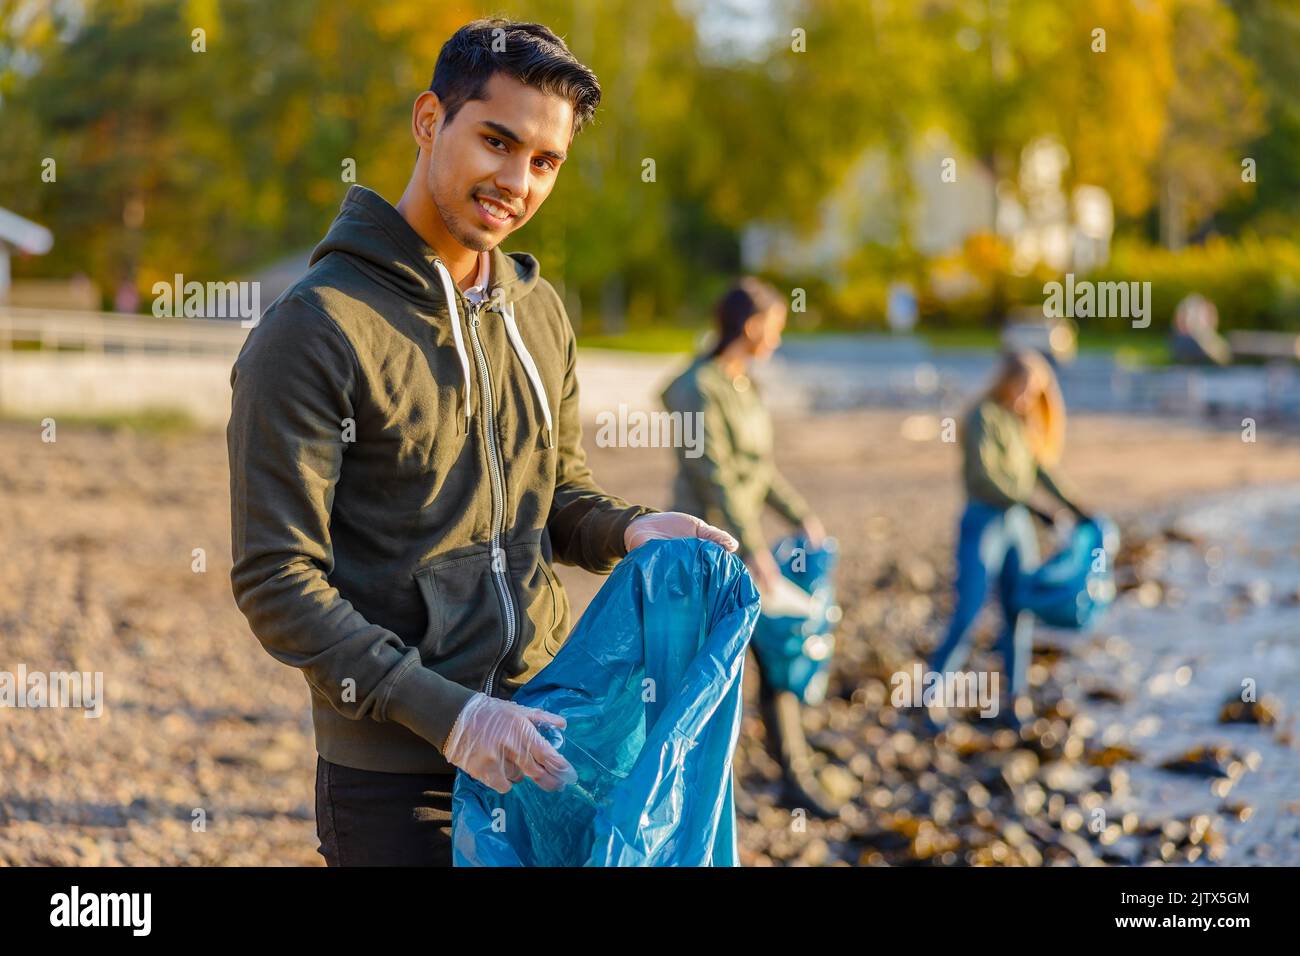 El hombre recoge la basura en una bolsa con un grupo de voluntarios el día soleado Foto de stock